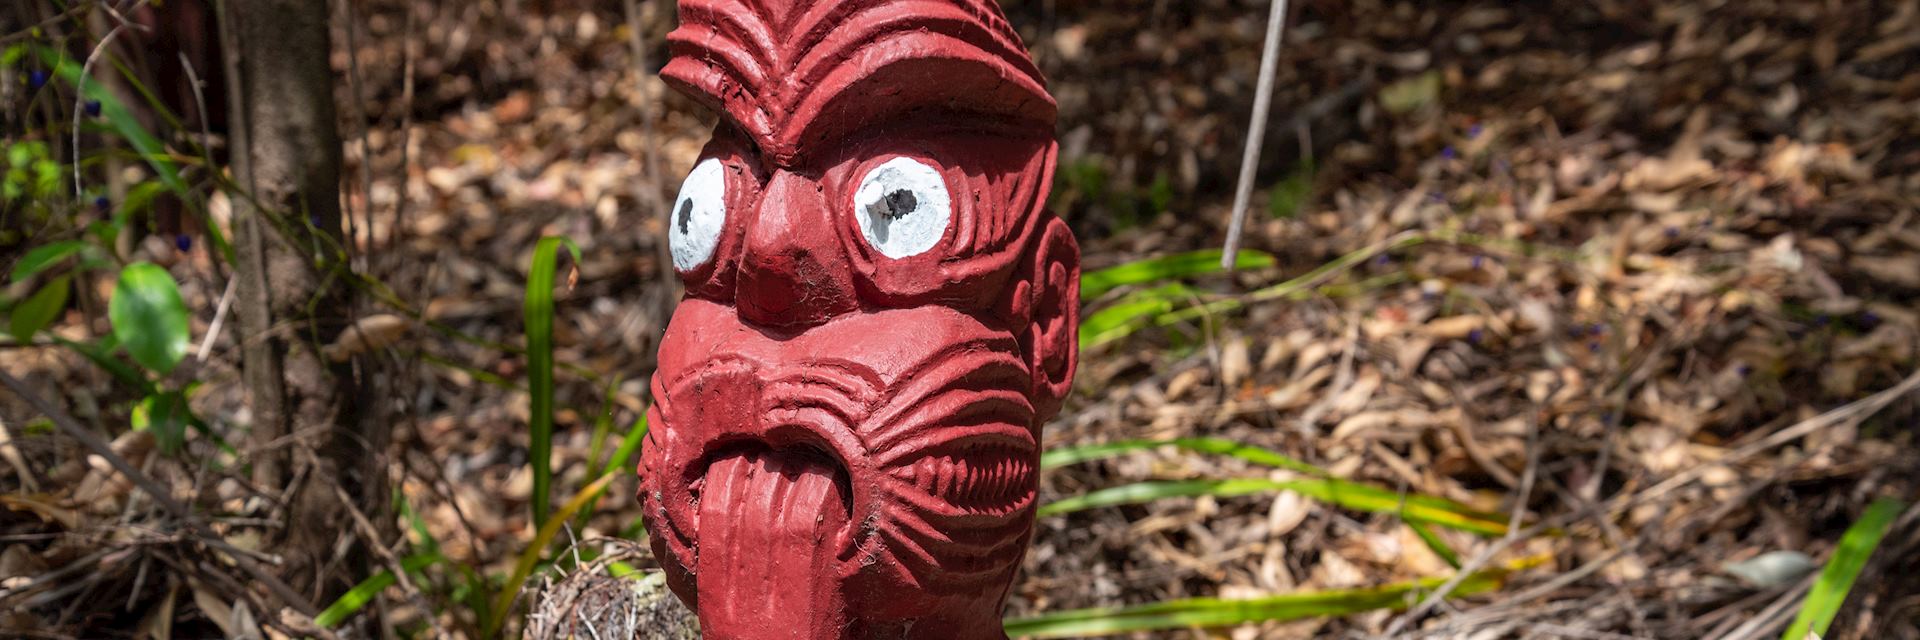 Maori carving, Rotorua